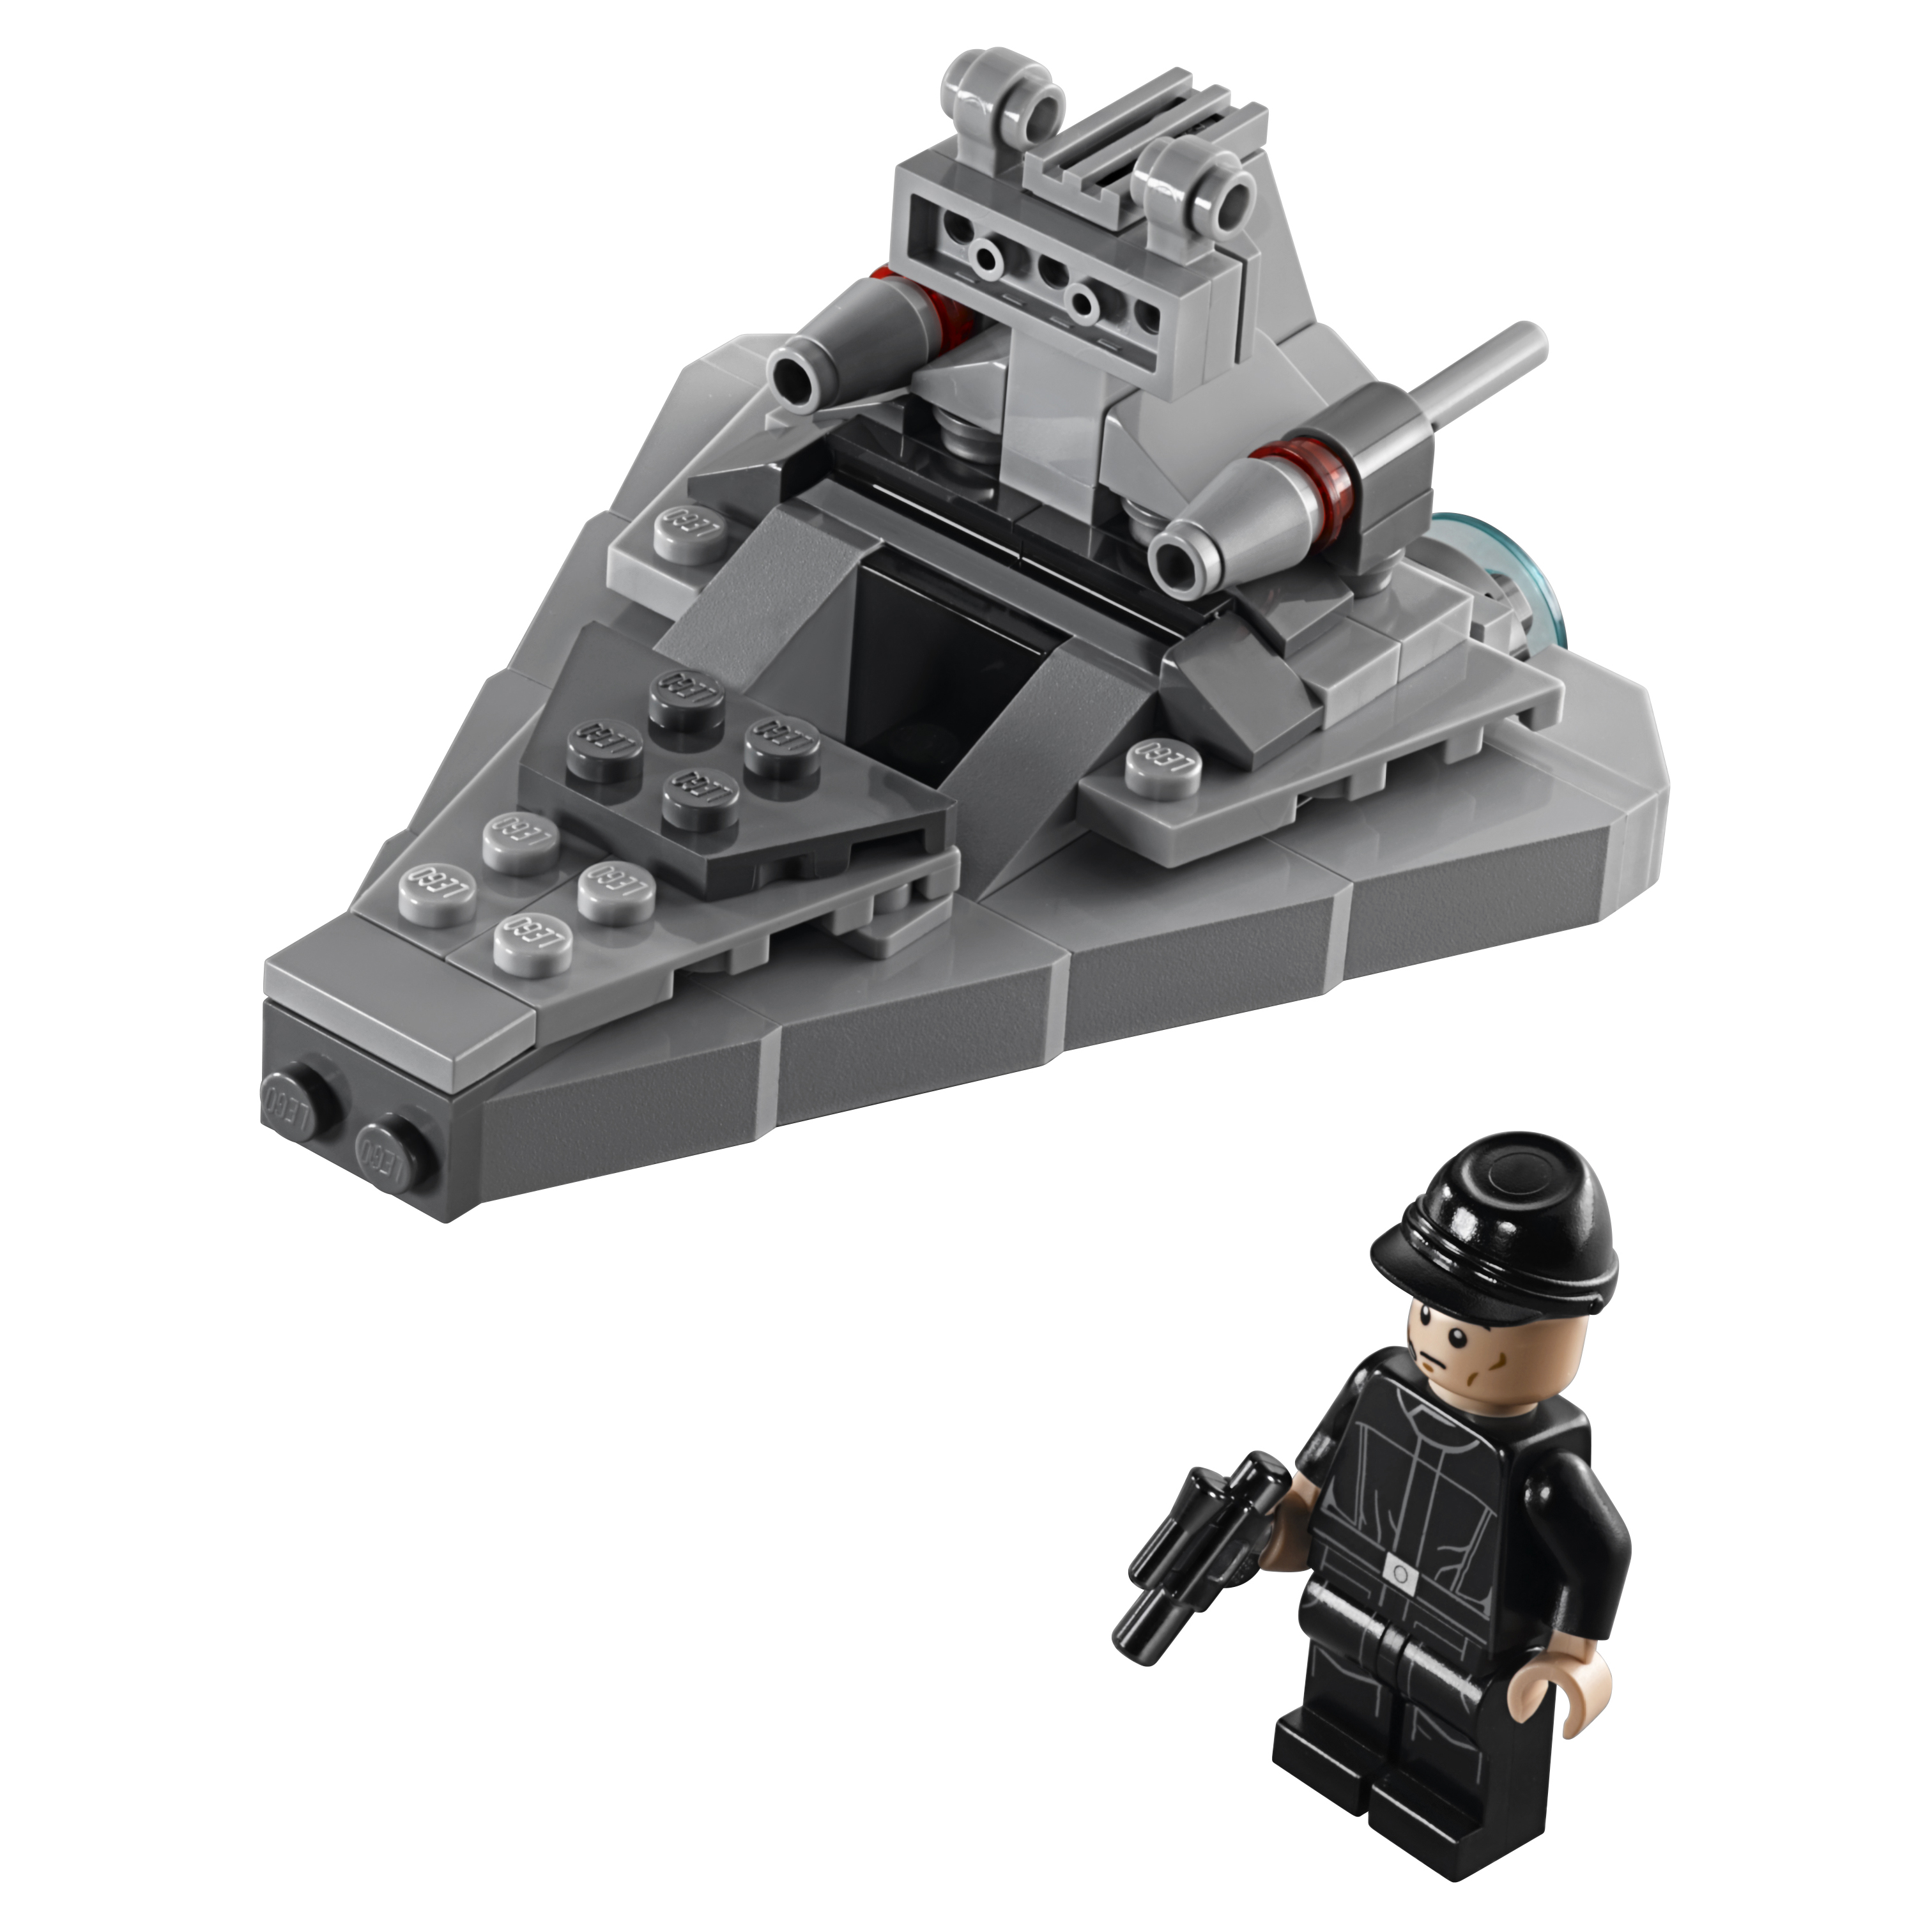 Купить Конструктор LEGO Star Wars Звёздный разрушитель (Star Destroyer) (75033),